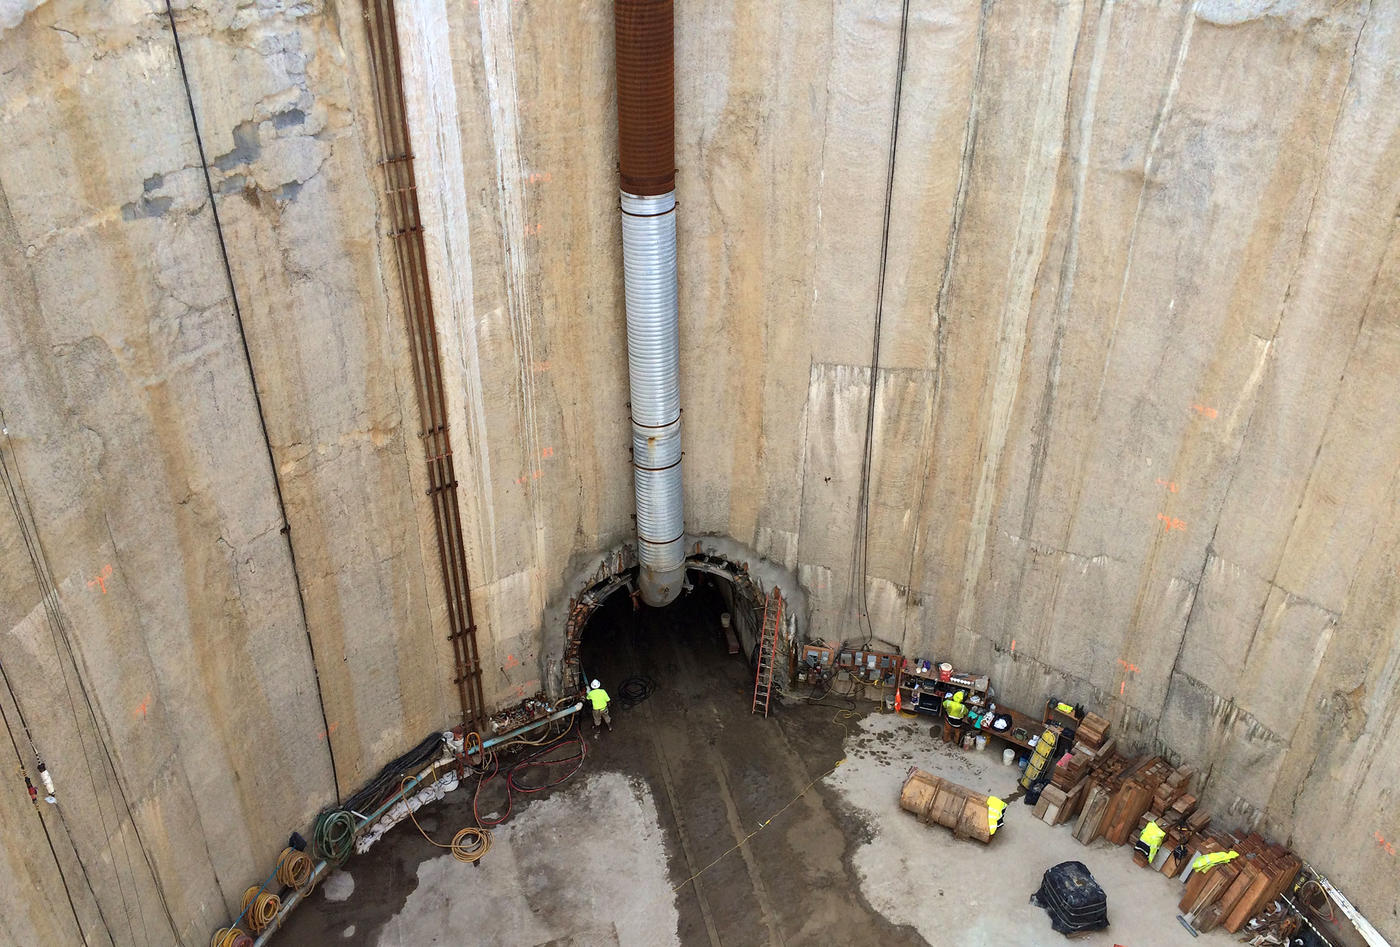 Kaneohe/Kailua Sewer Tunnel shaft